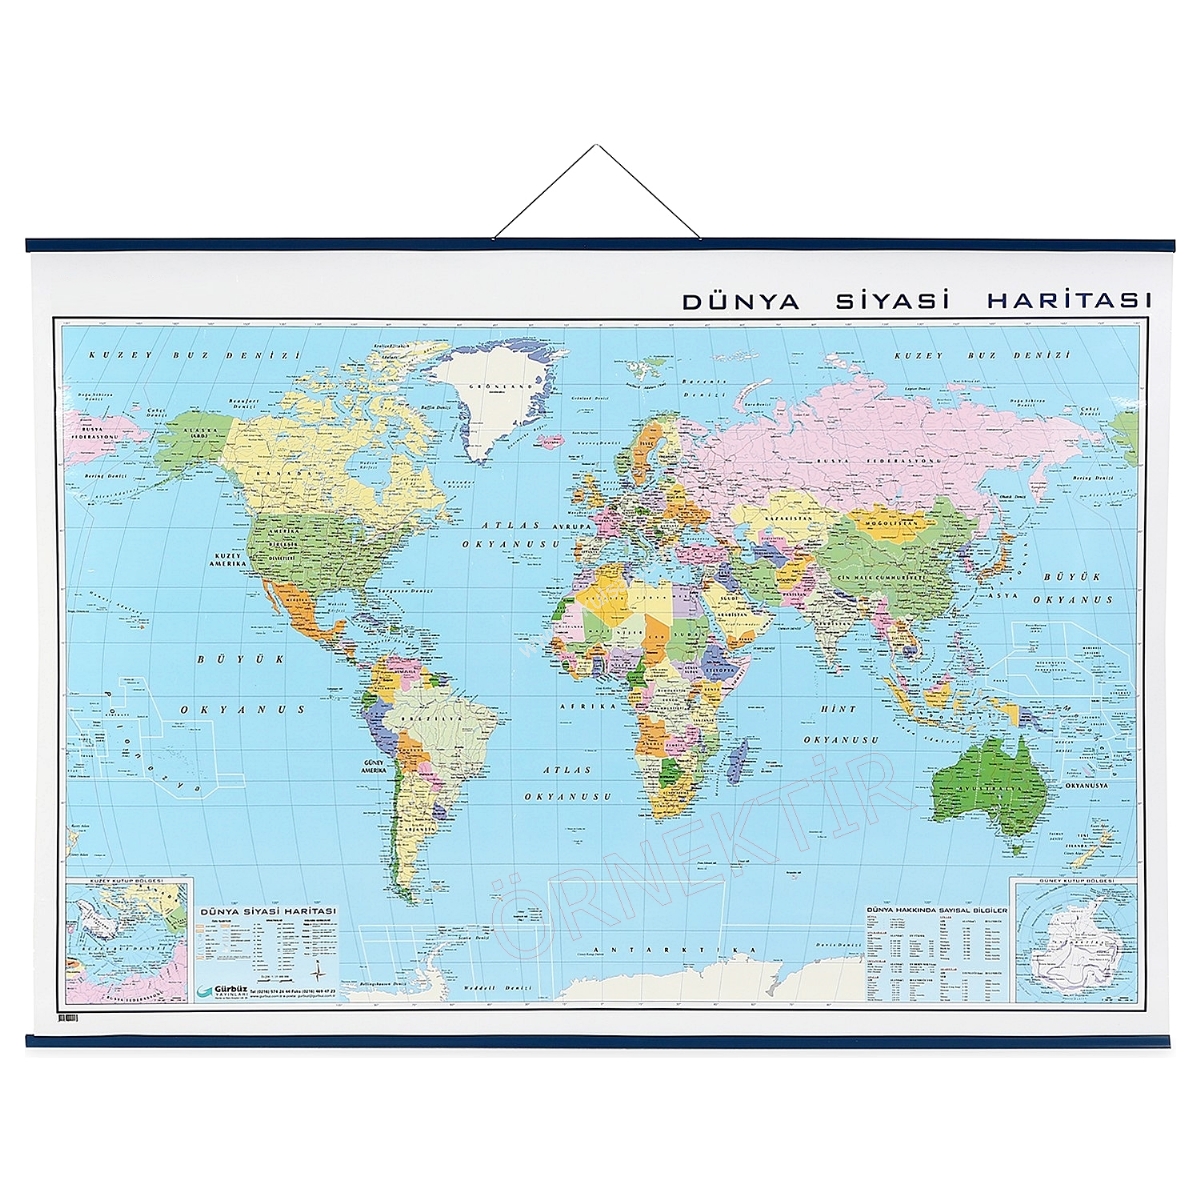 Bağımsız Türk Devletleri Haritası 70x100cm 50,00 TL + Kdv - Bağımsız